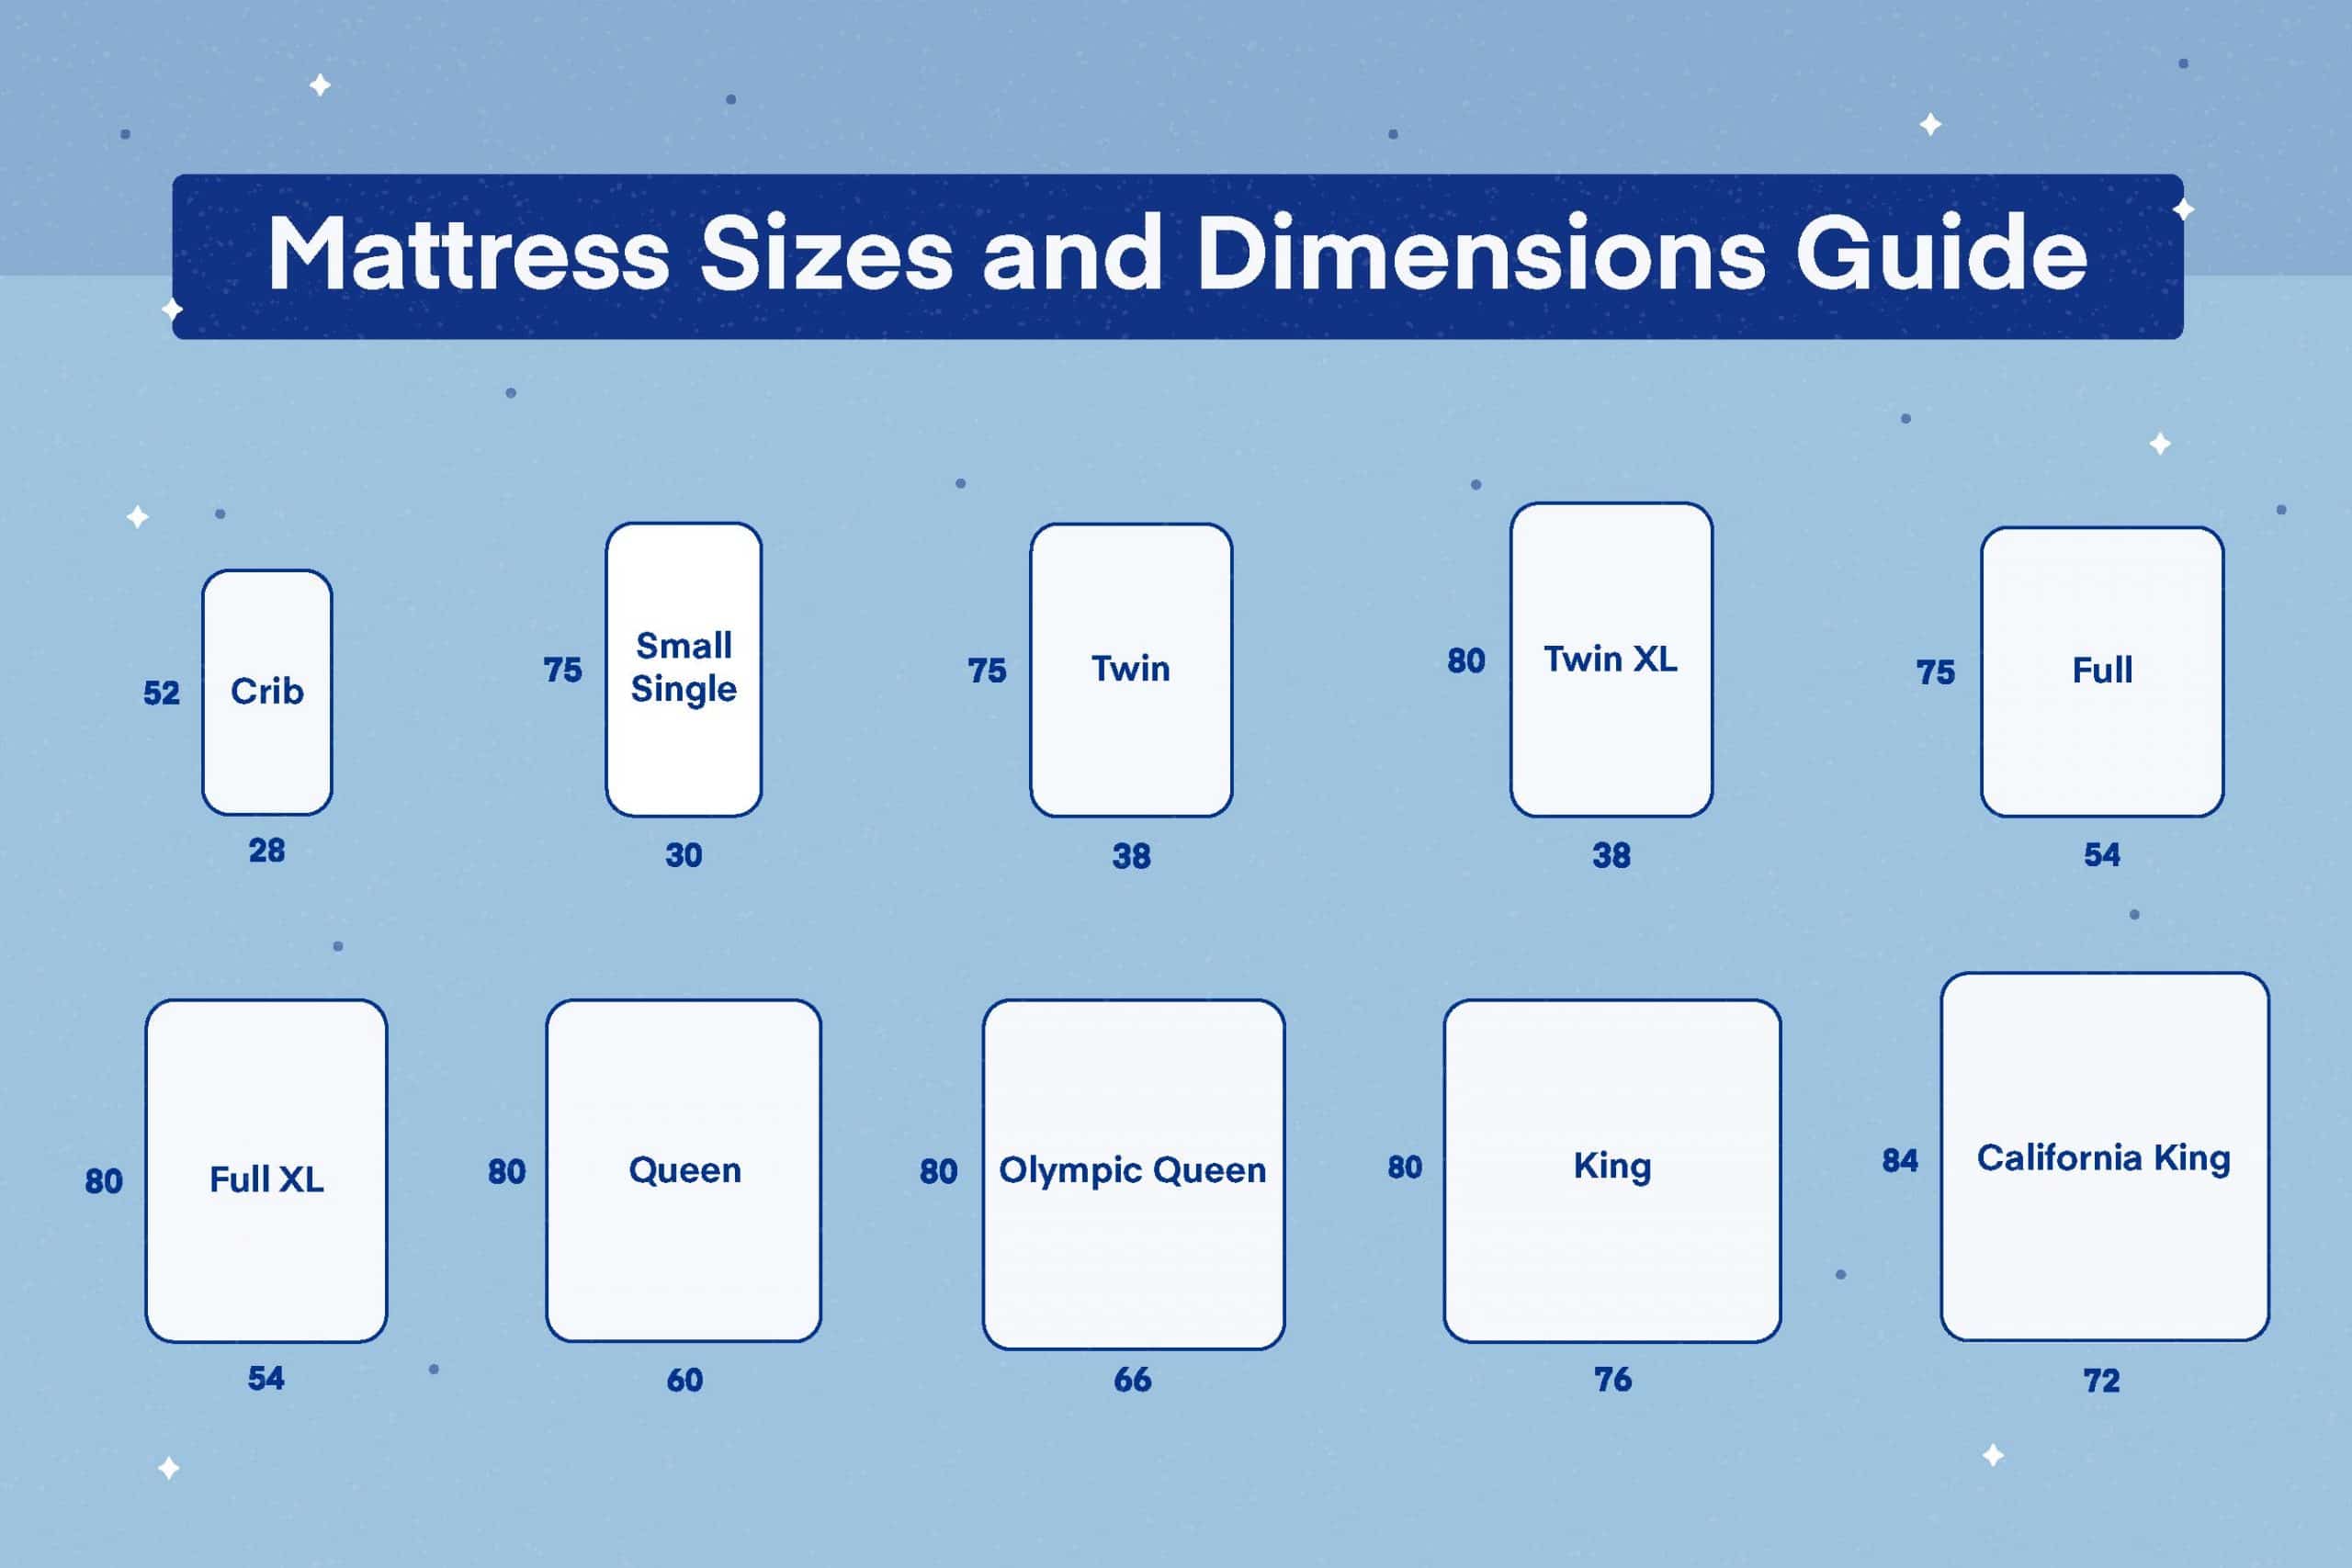 Standard Mattress Sizes